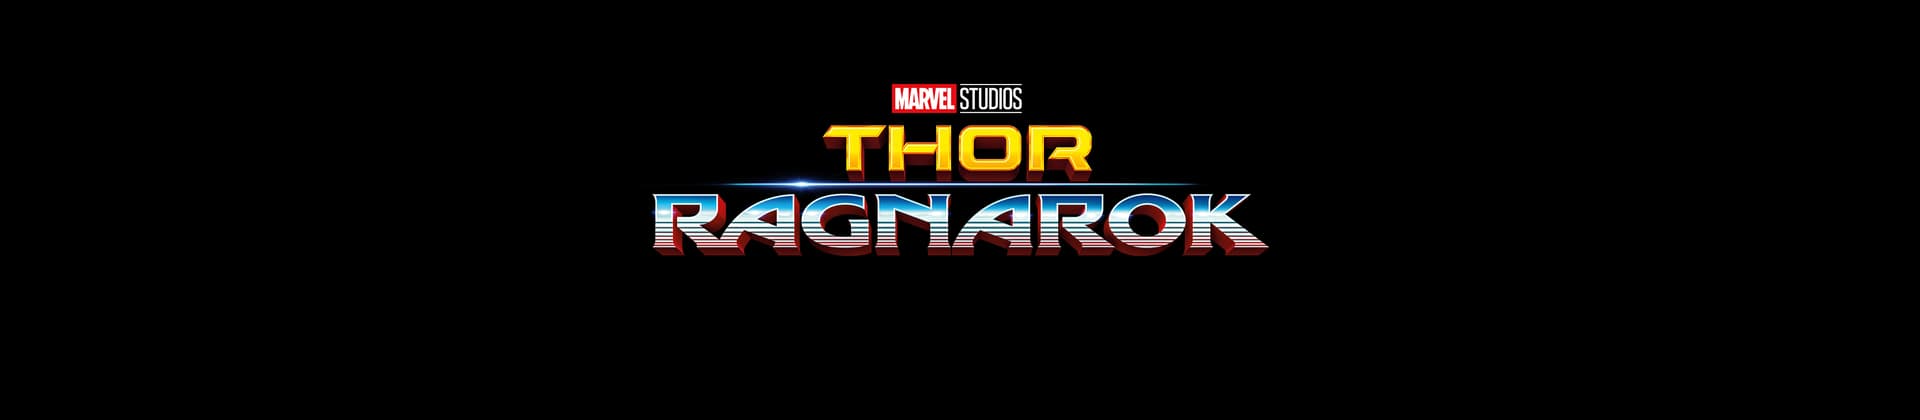 Thor: Ragnarok Movie Logo On Black